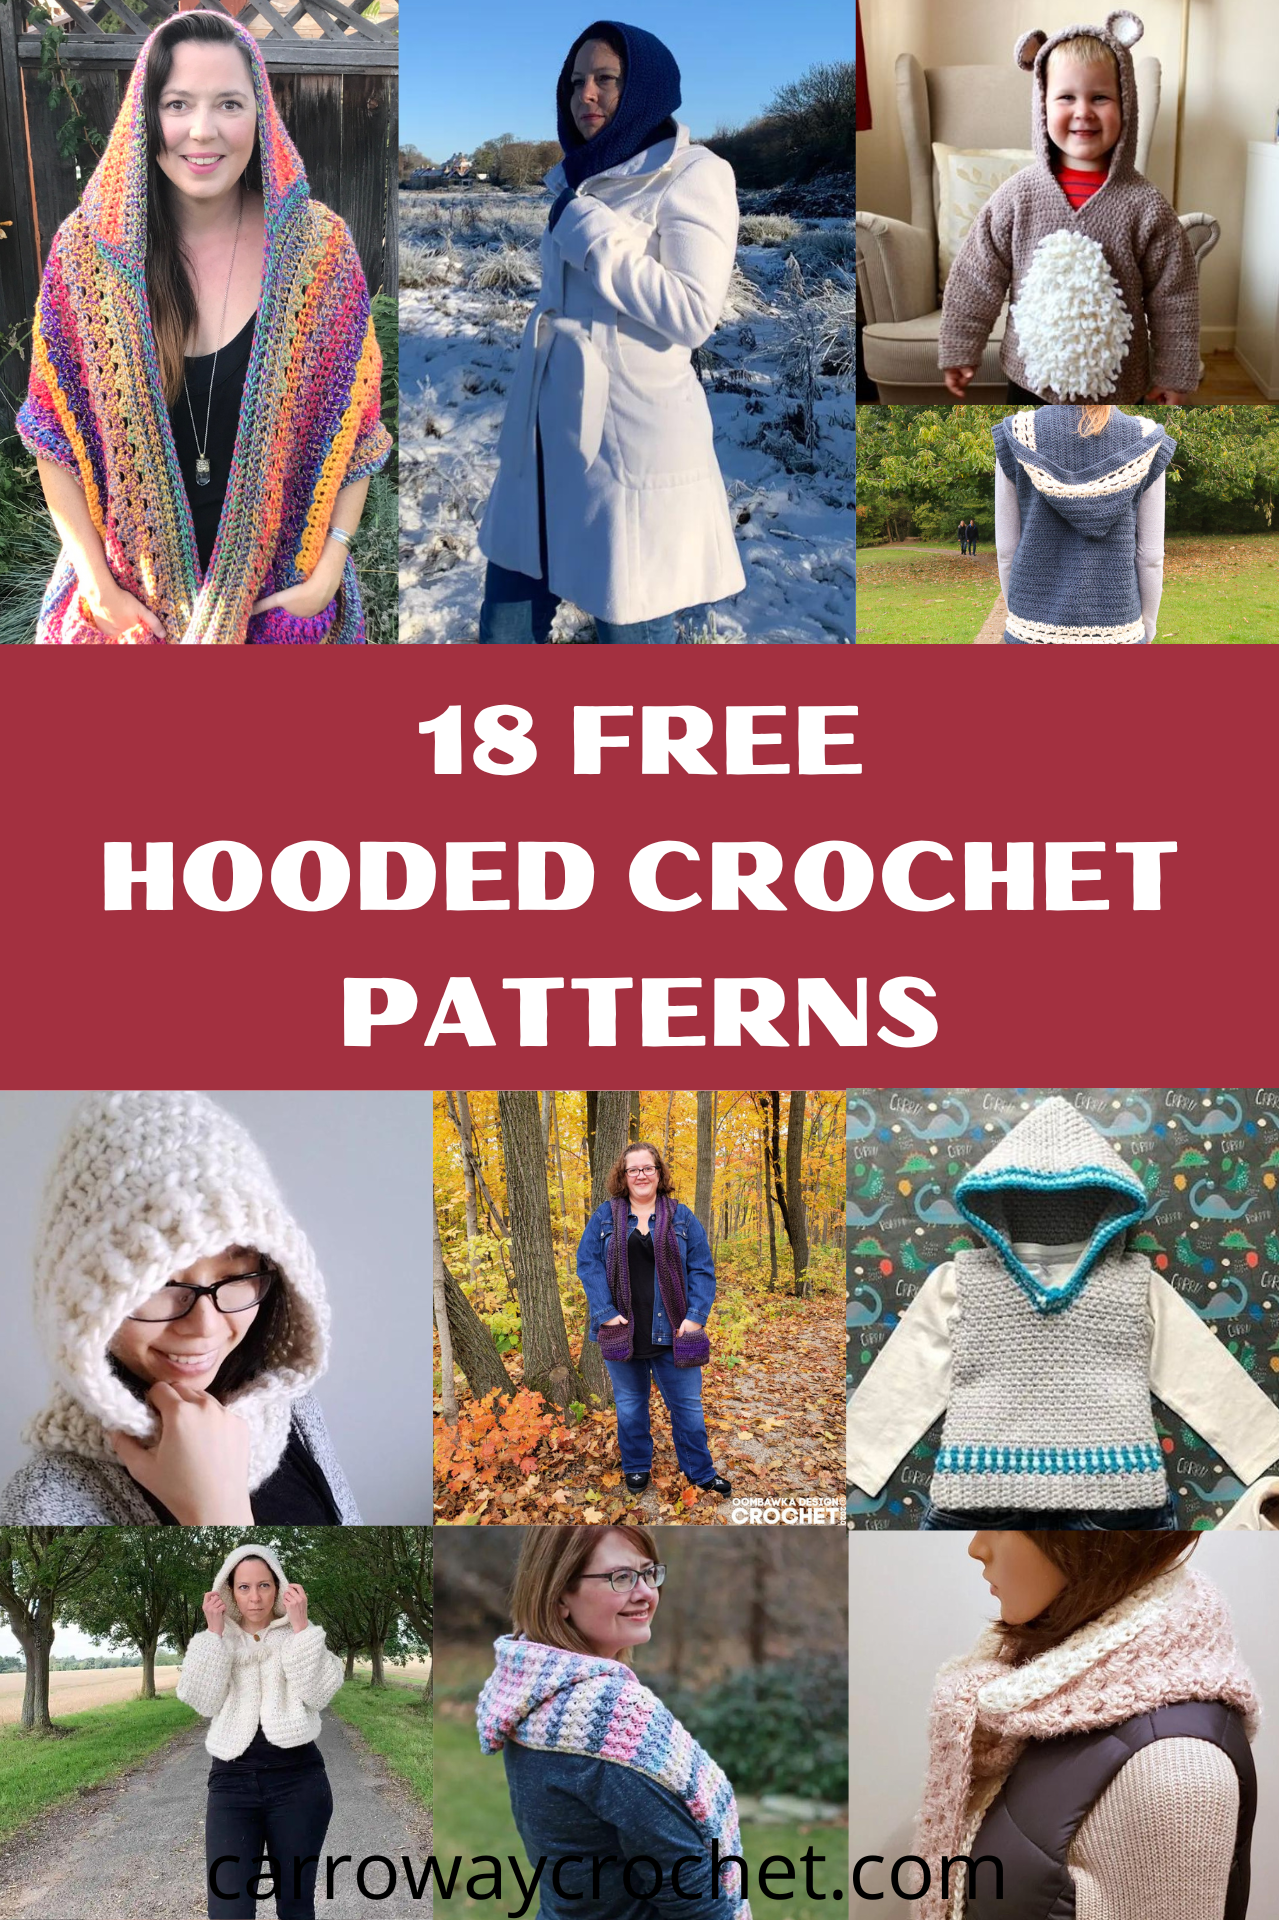 Winter Scarf Snowberries Crochet Pattern - Kirsten Holloway Designs